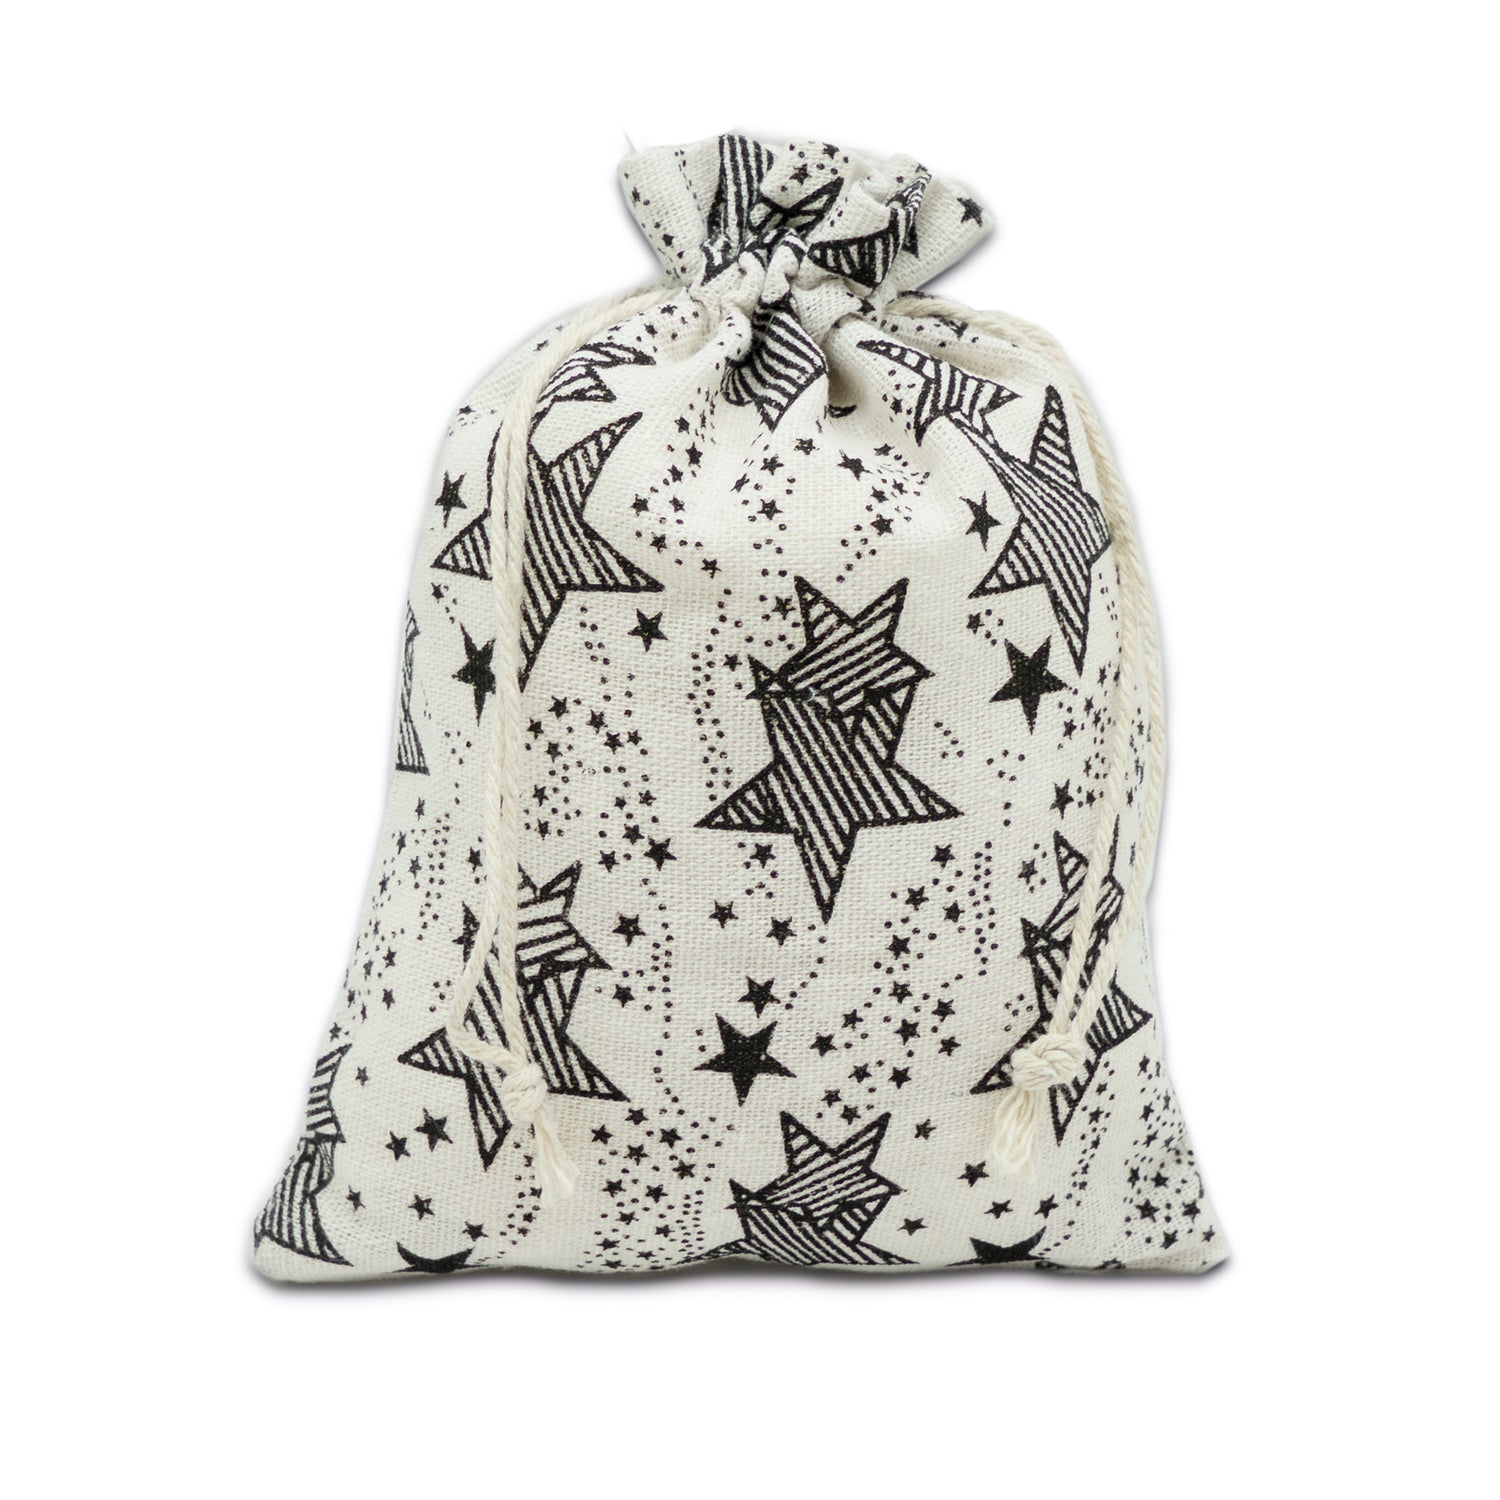 8" x 10" Cotton Muslin Black Star Drawstring Gift Bags